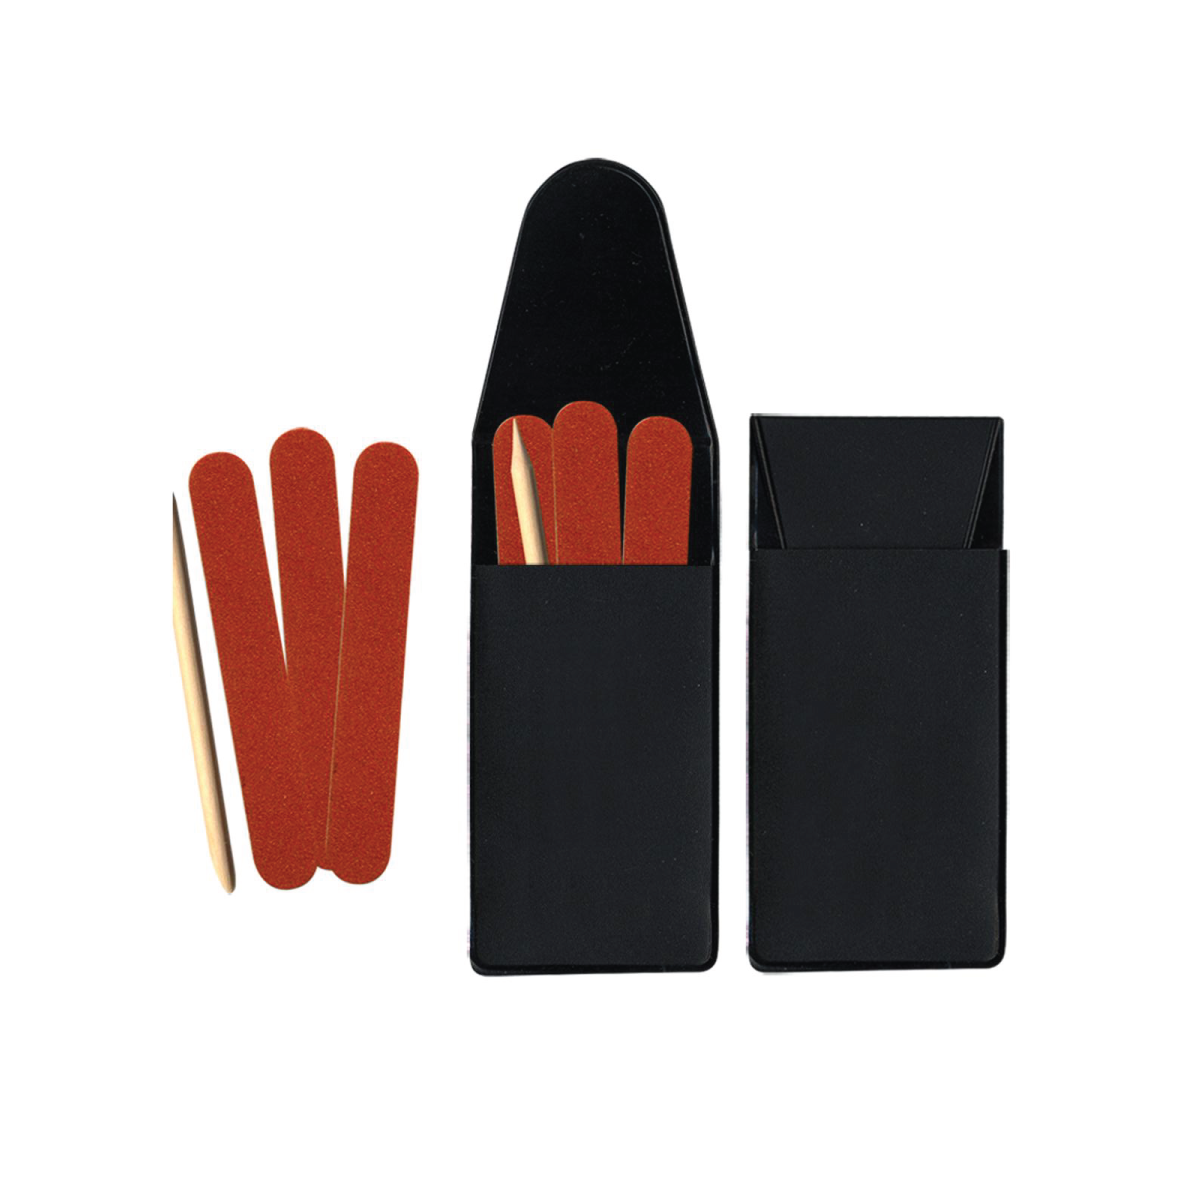 Black Pocket & Purse Nail File Kit